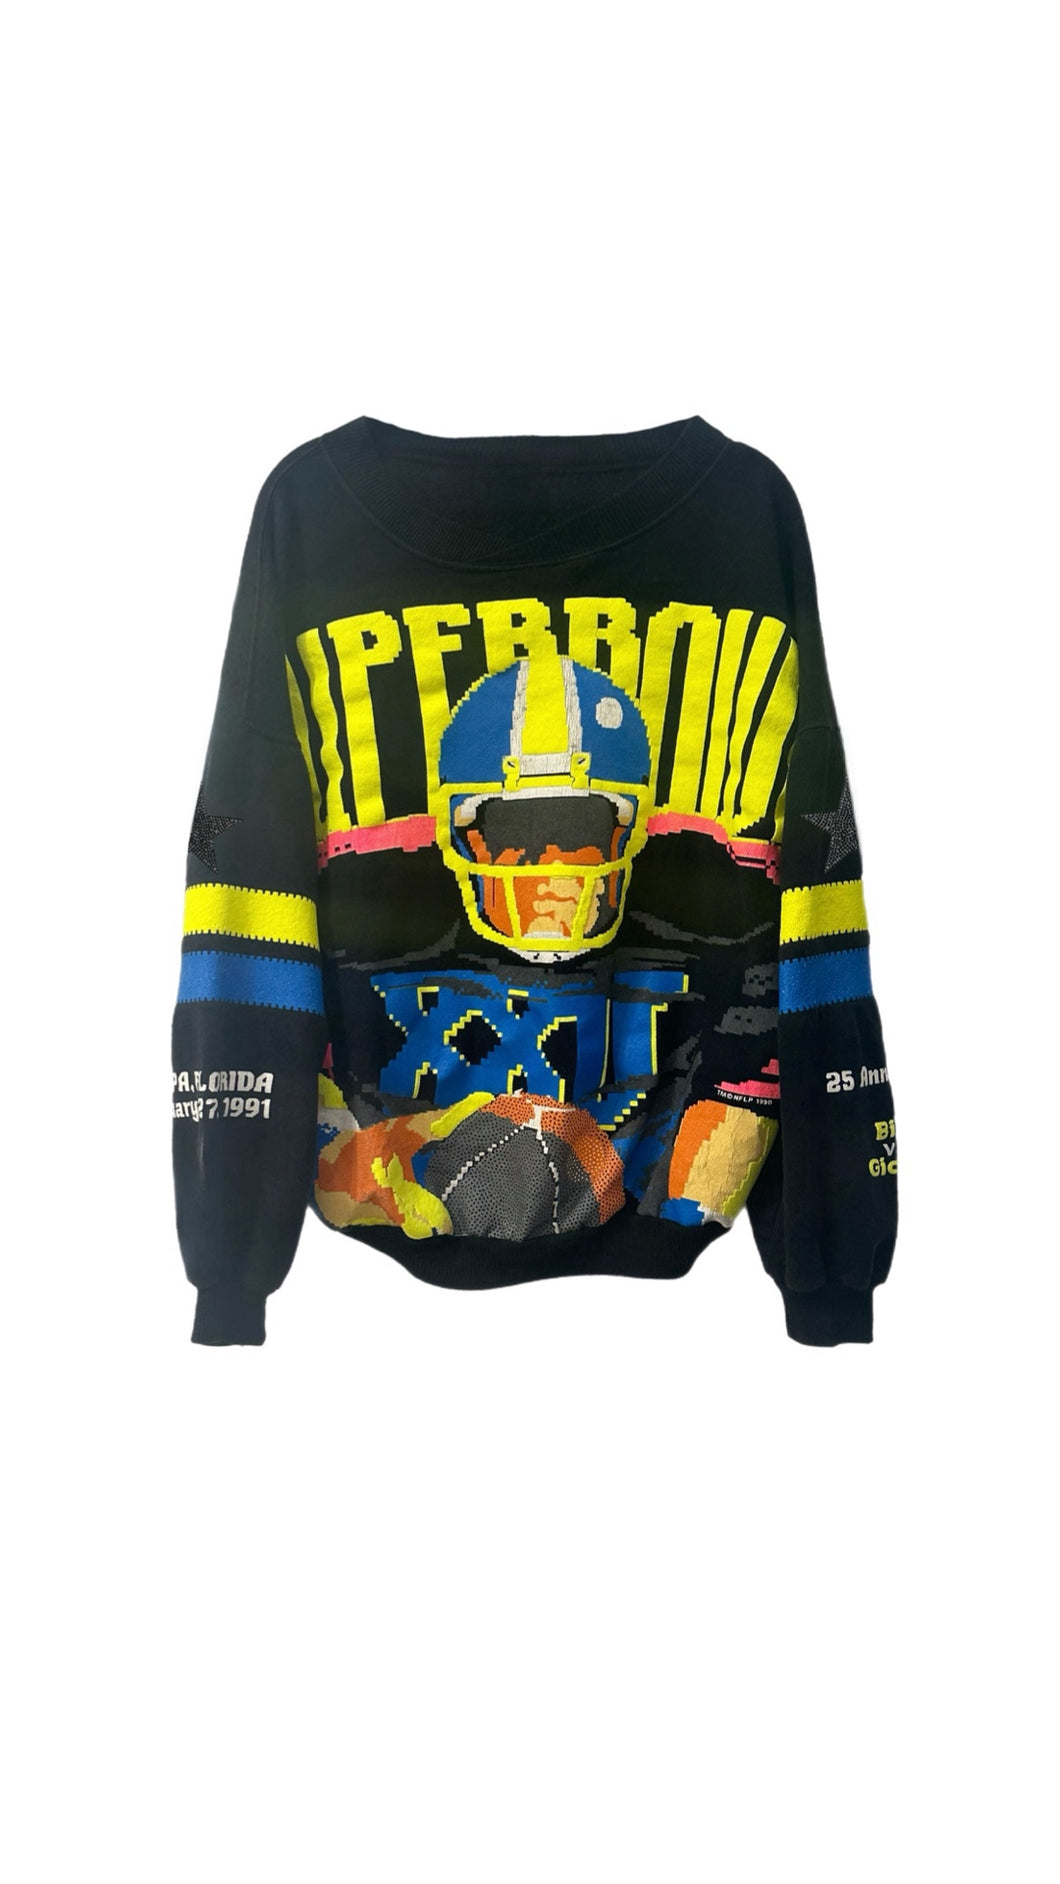 Super Bowl, NFL One of a KIND Vintage 1991 “Rare Find” Sweatshirt with Black Crystal Design